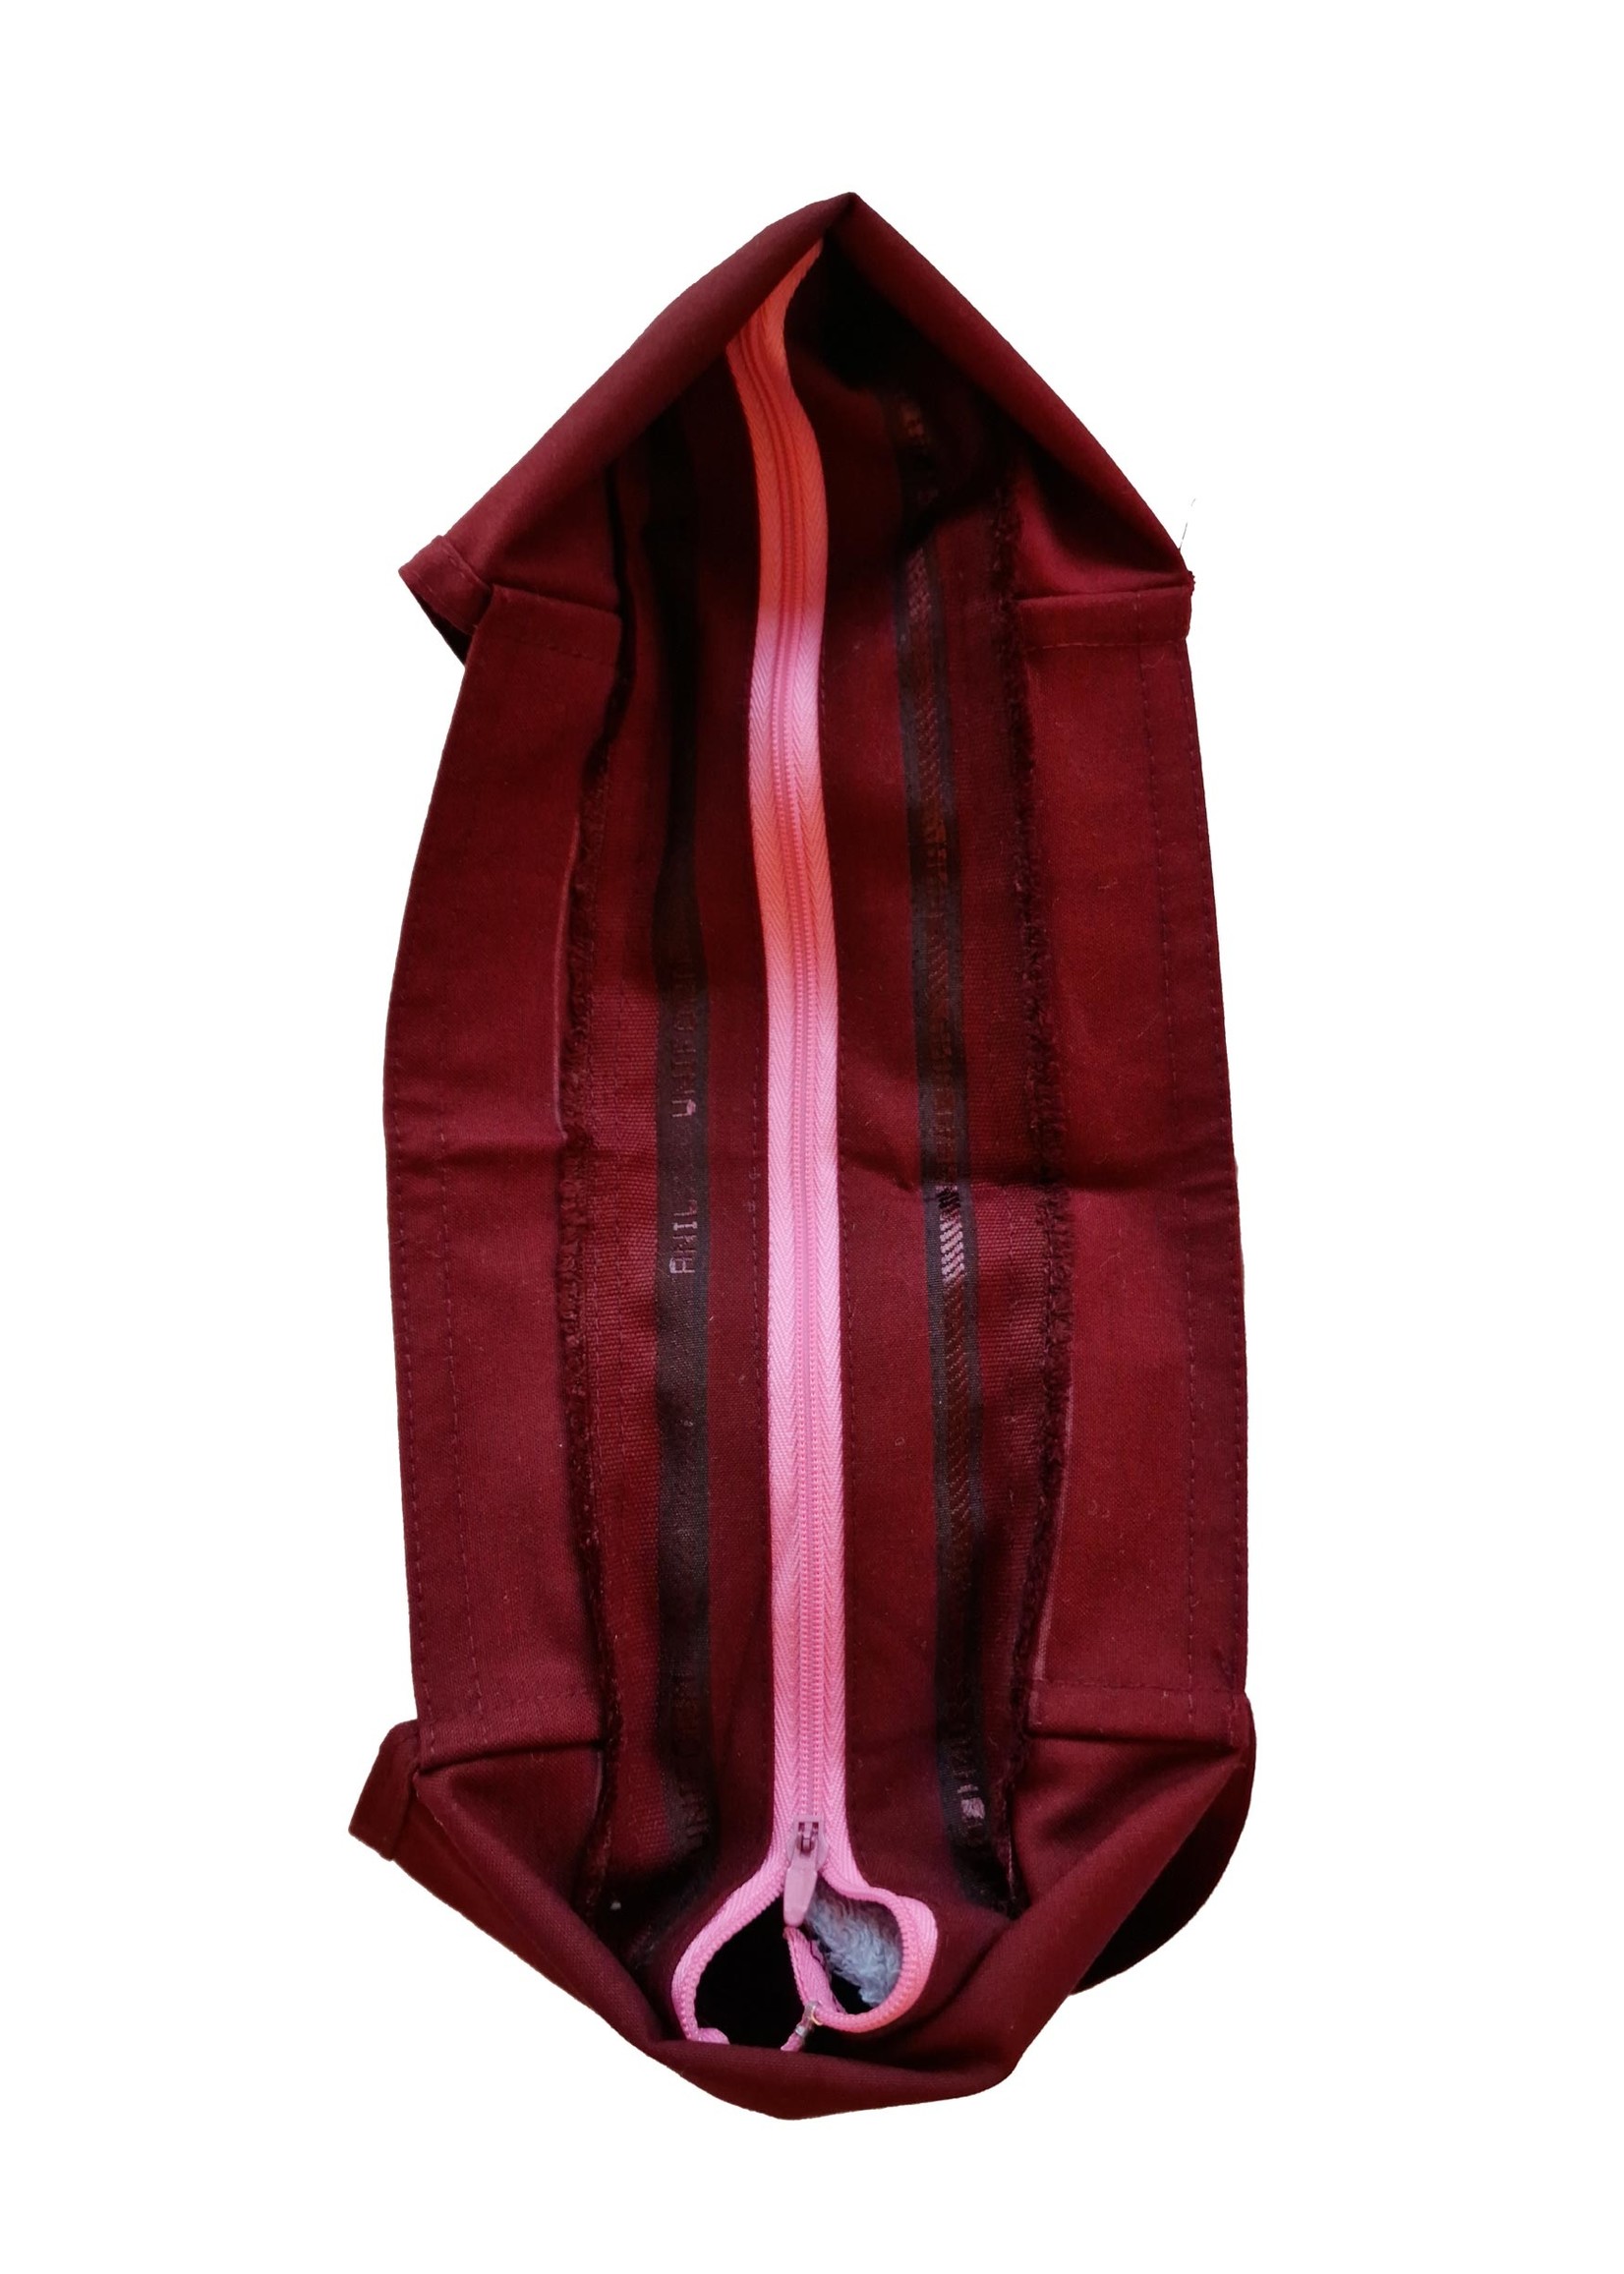 Tibetan Monk Bag, maroon